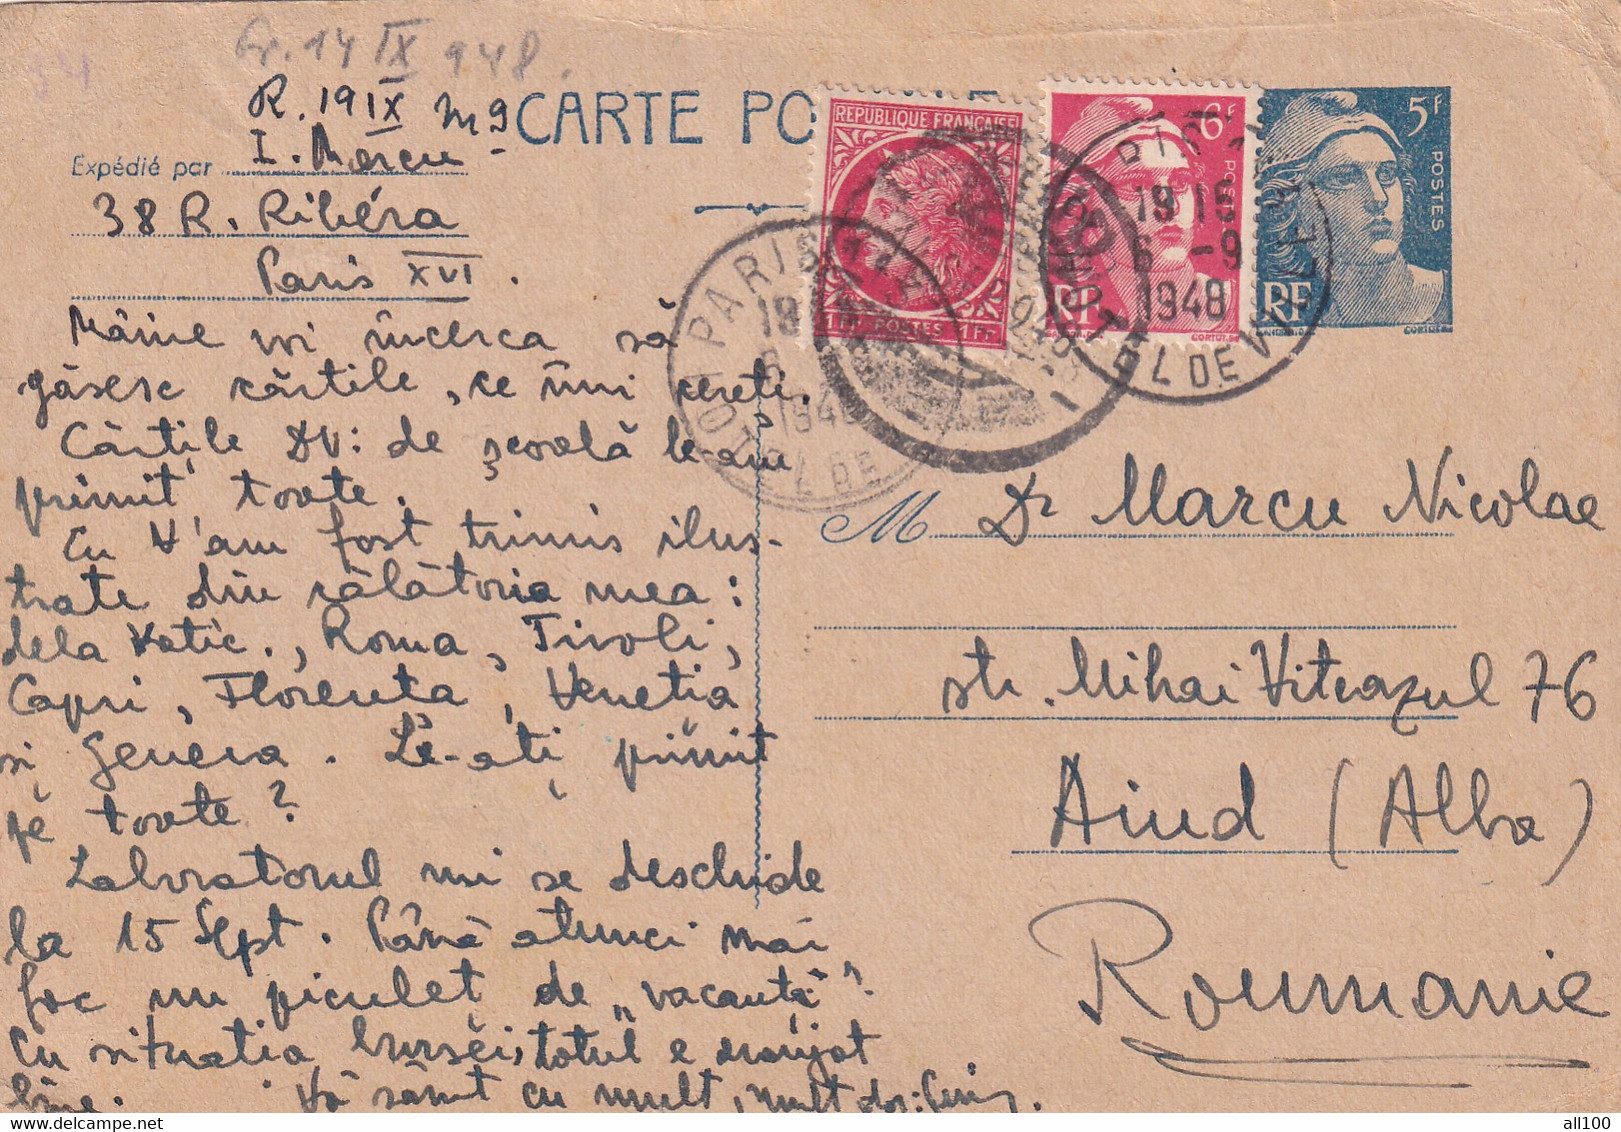 A17018 - ROMANIA 1948 Postal Stationery SENT TO AIUD JUD. ALBA  USED - Used Stamps